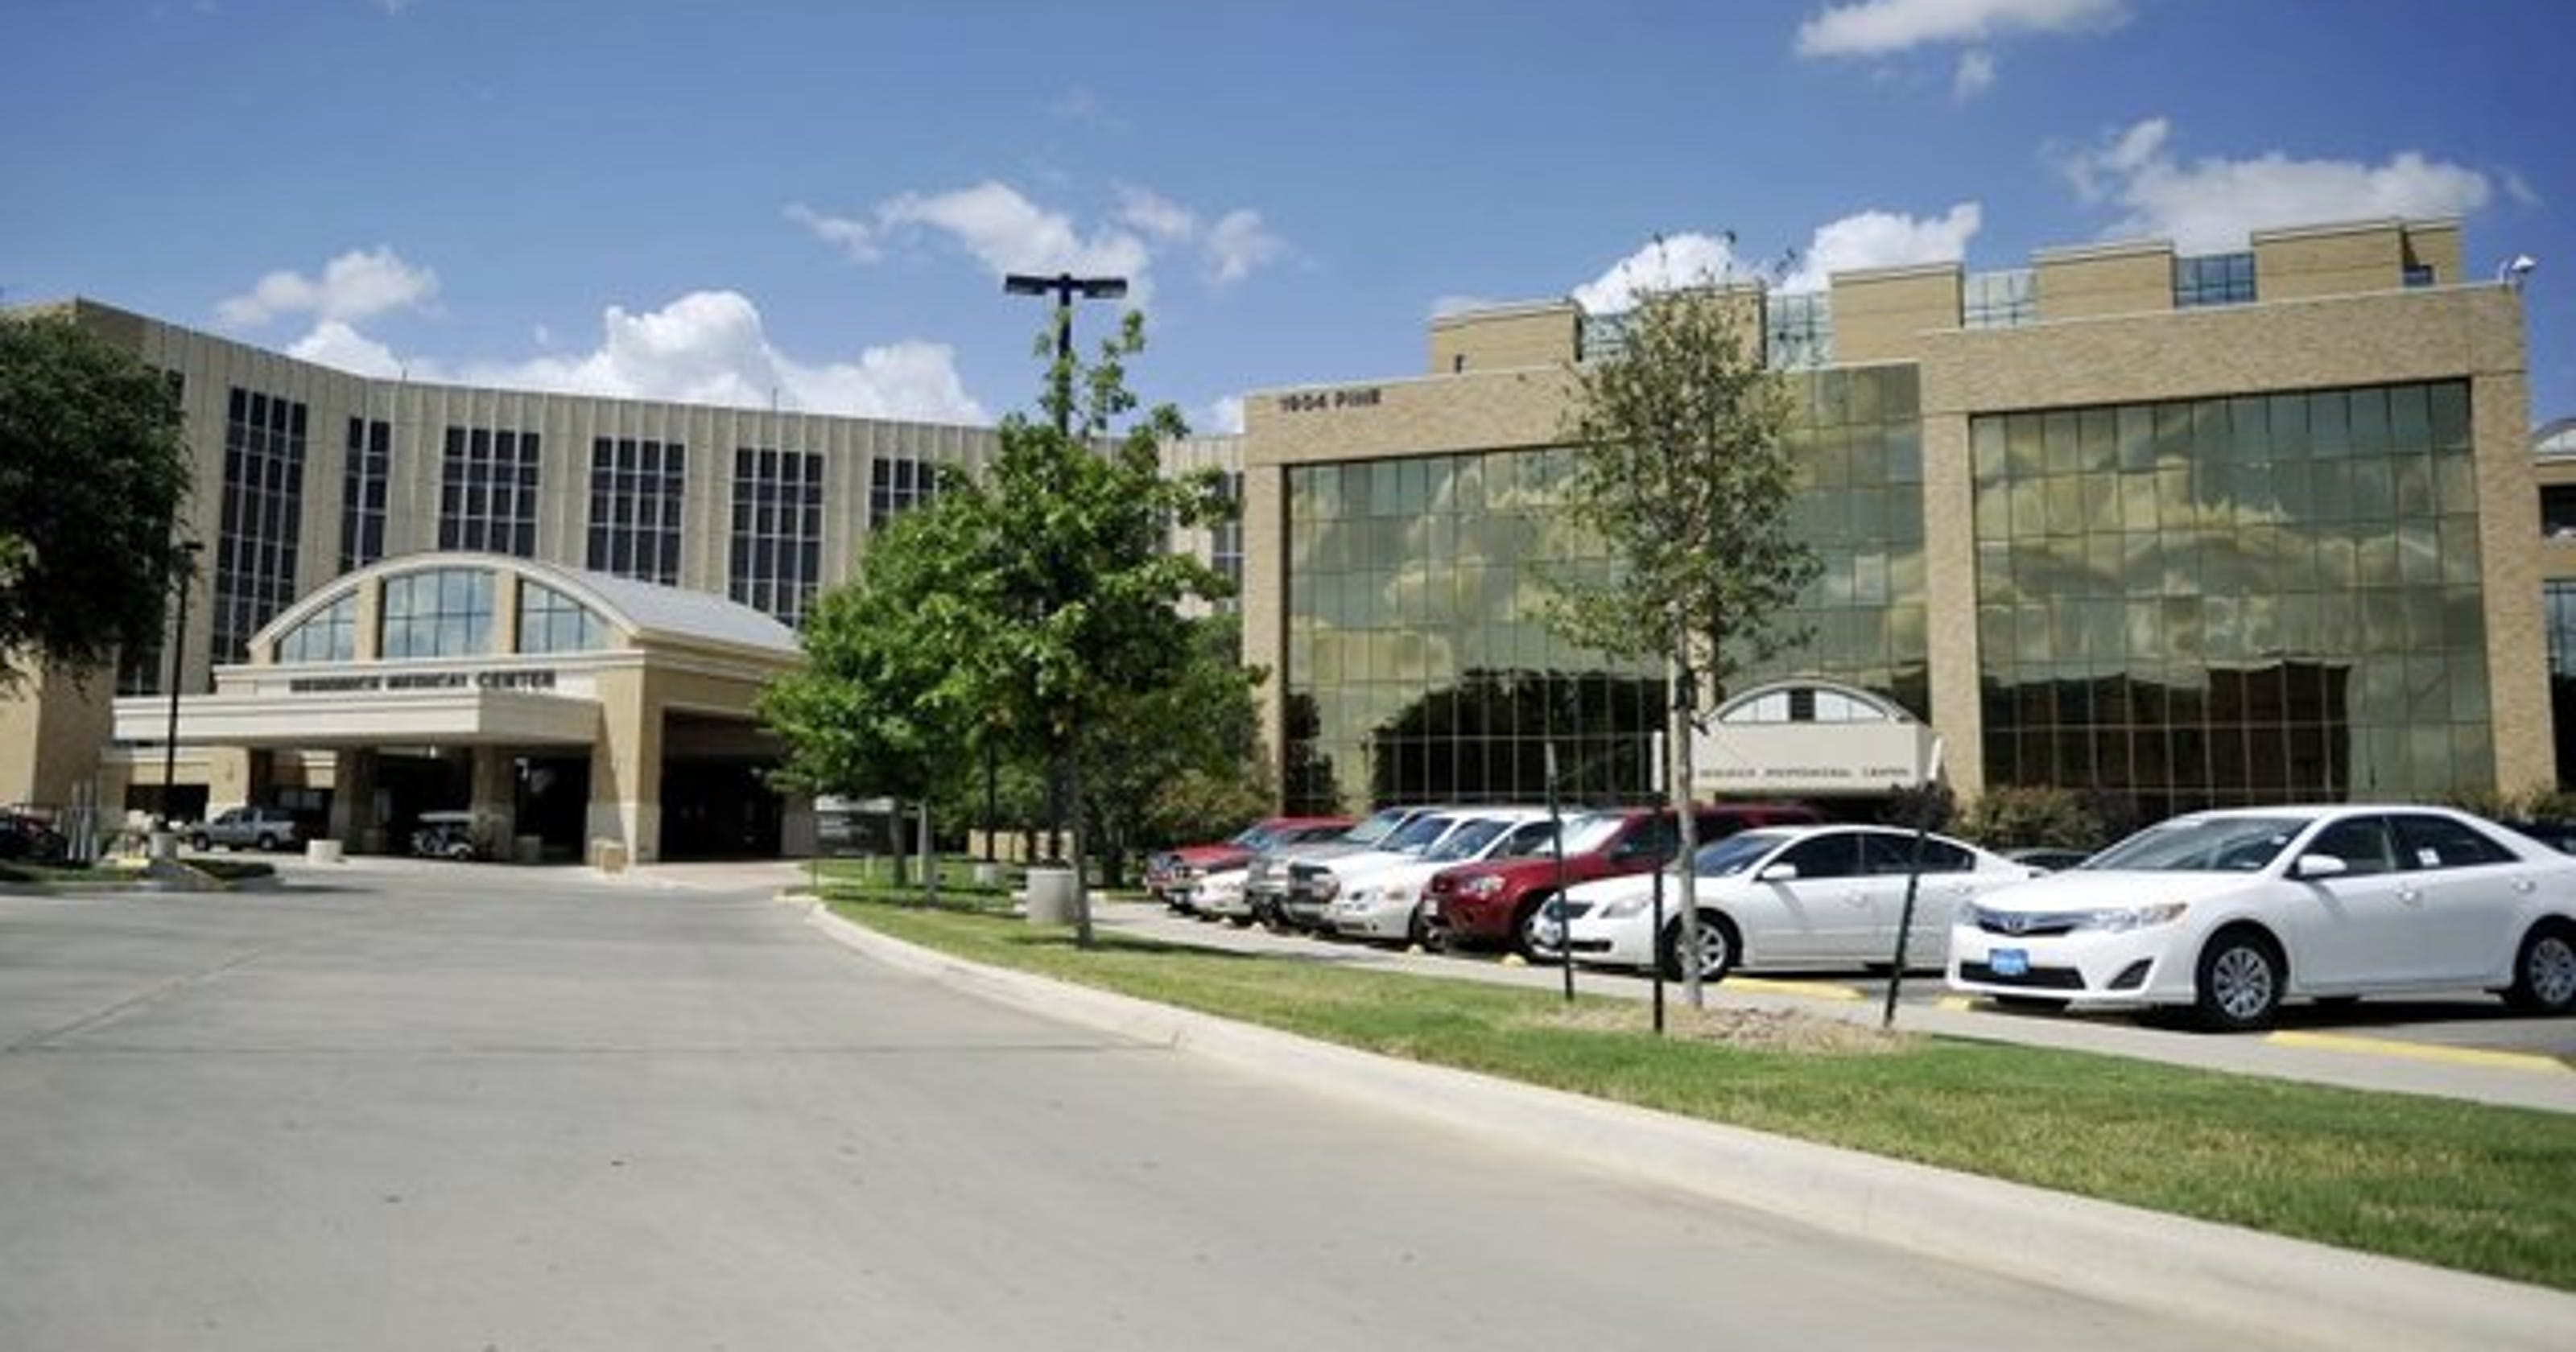 Man shoots himself at Abilene's Hendrick Medical Center